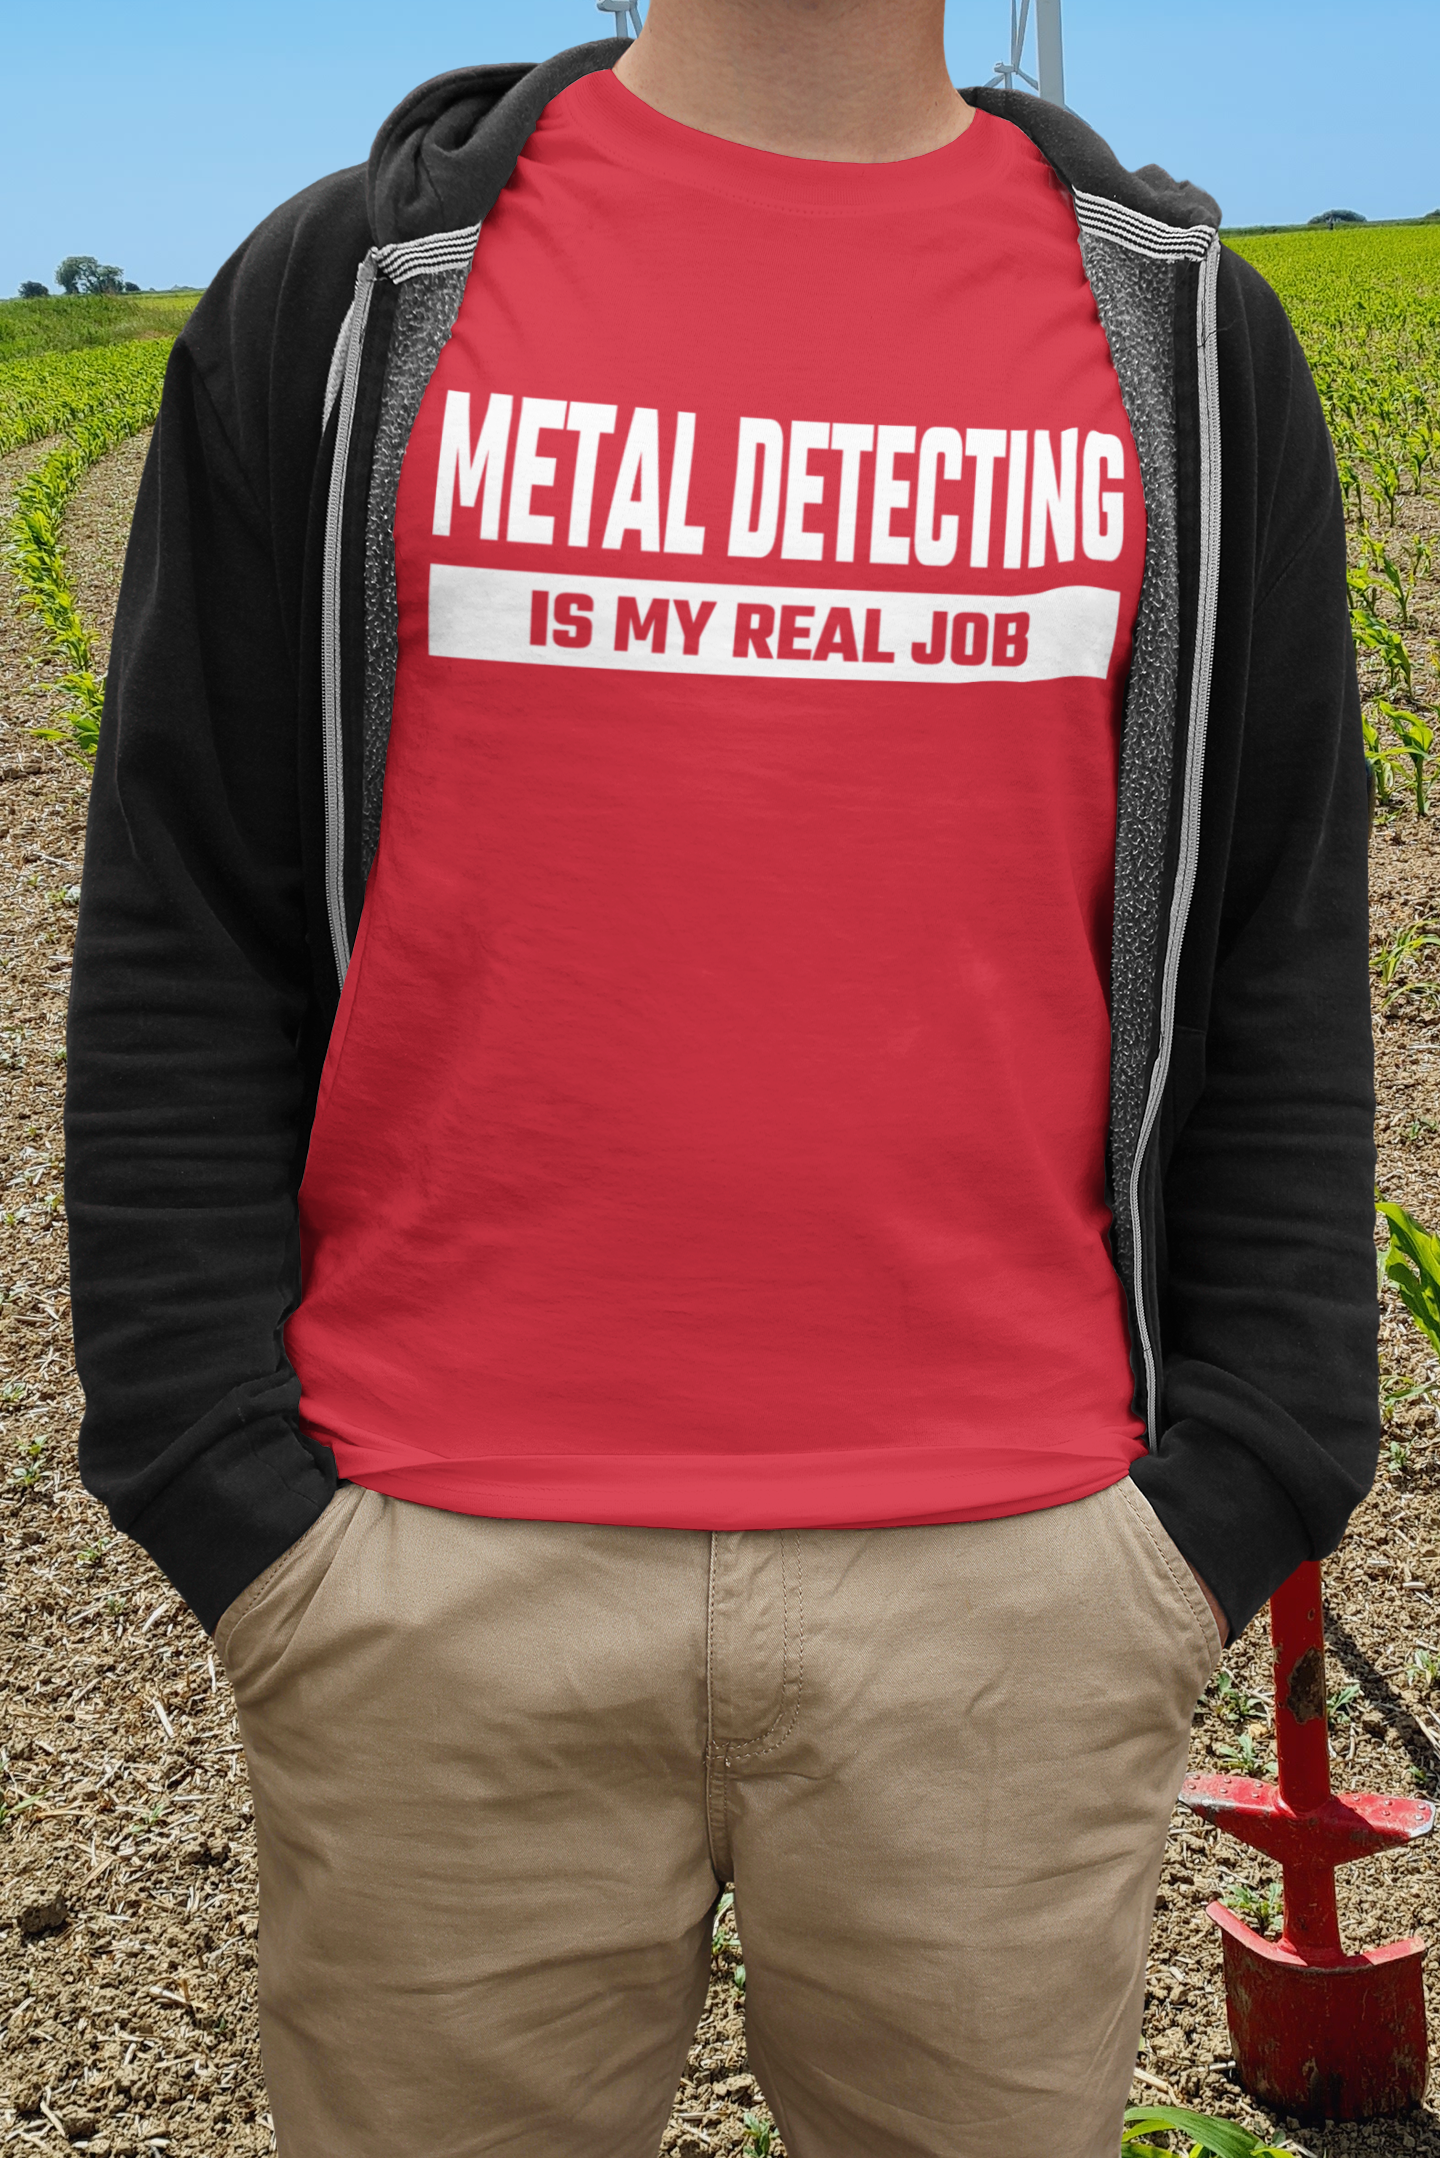 Metal detecting is my real job